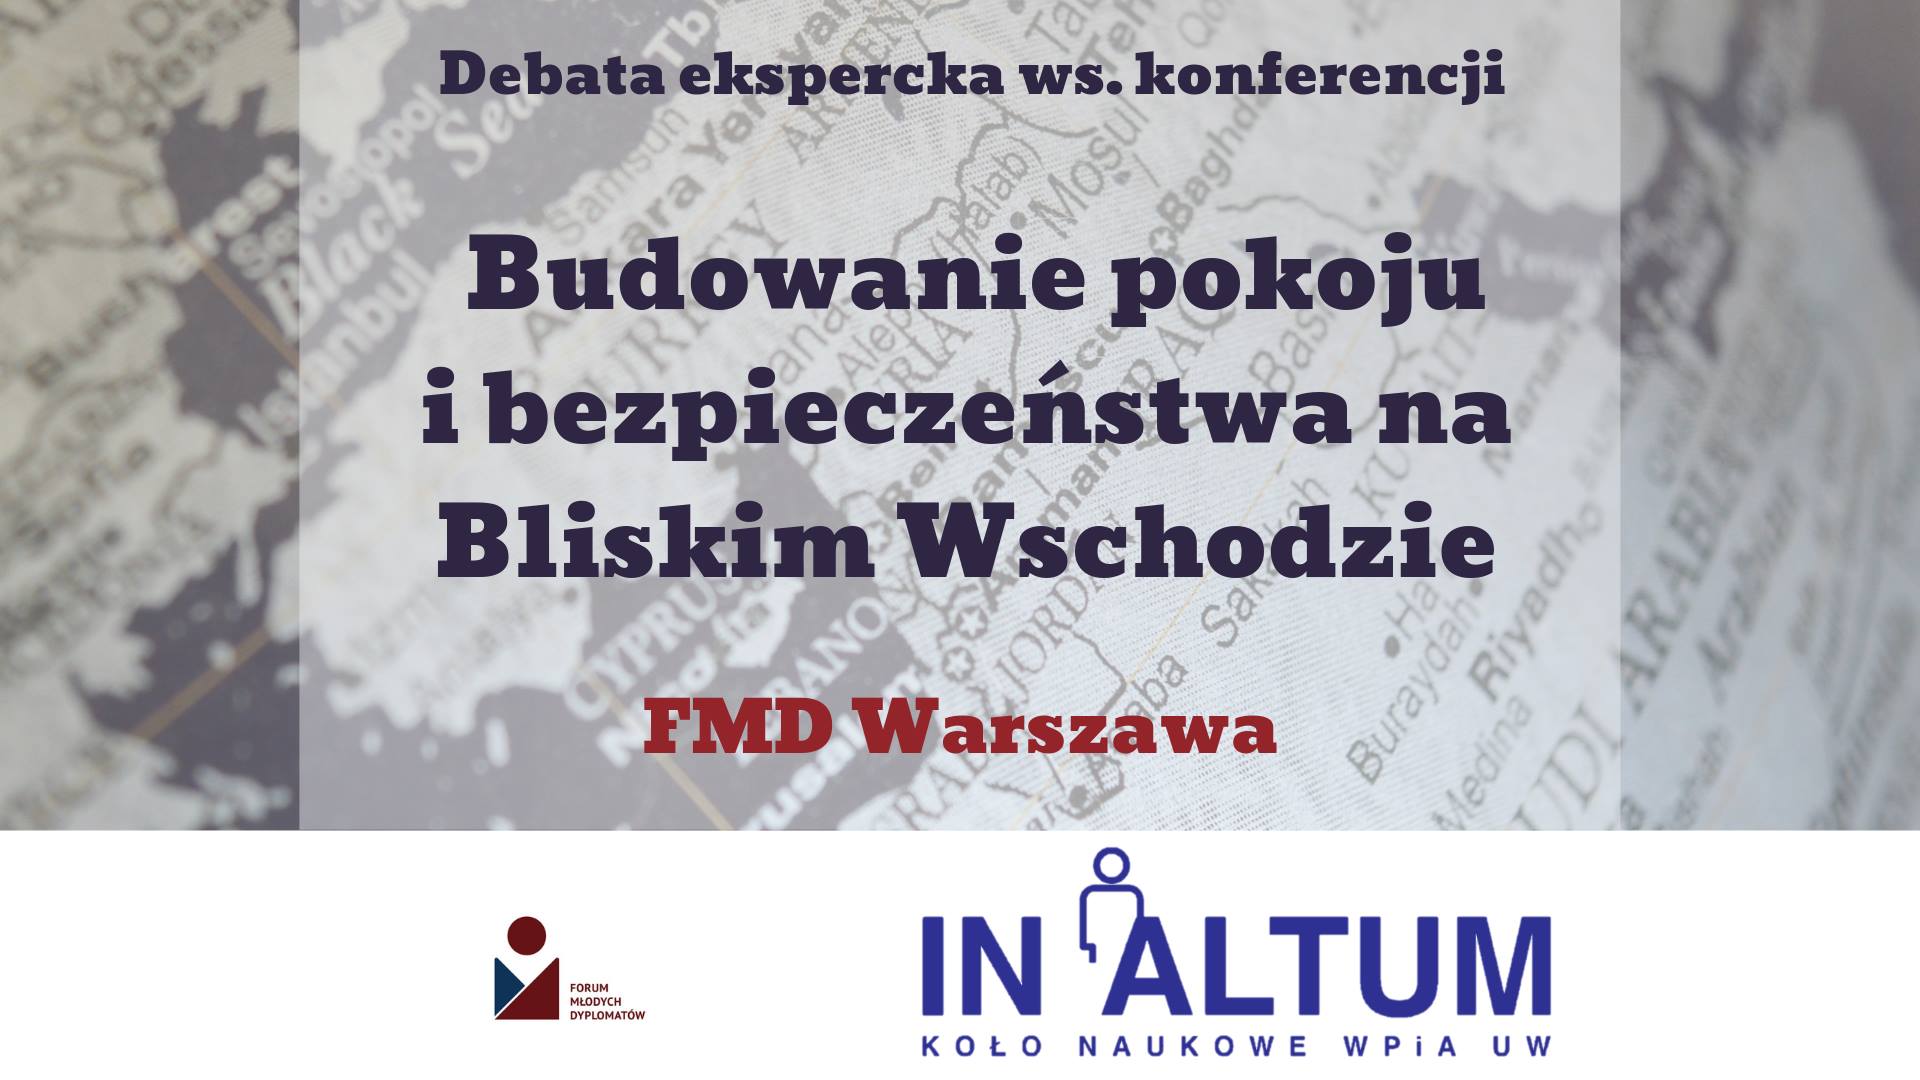 FMD Warszawa: Debata ekspercka ws. konferencji bliskowschodniej